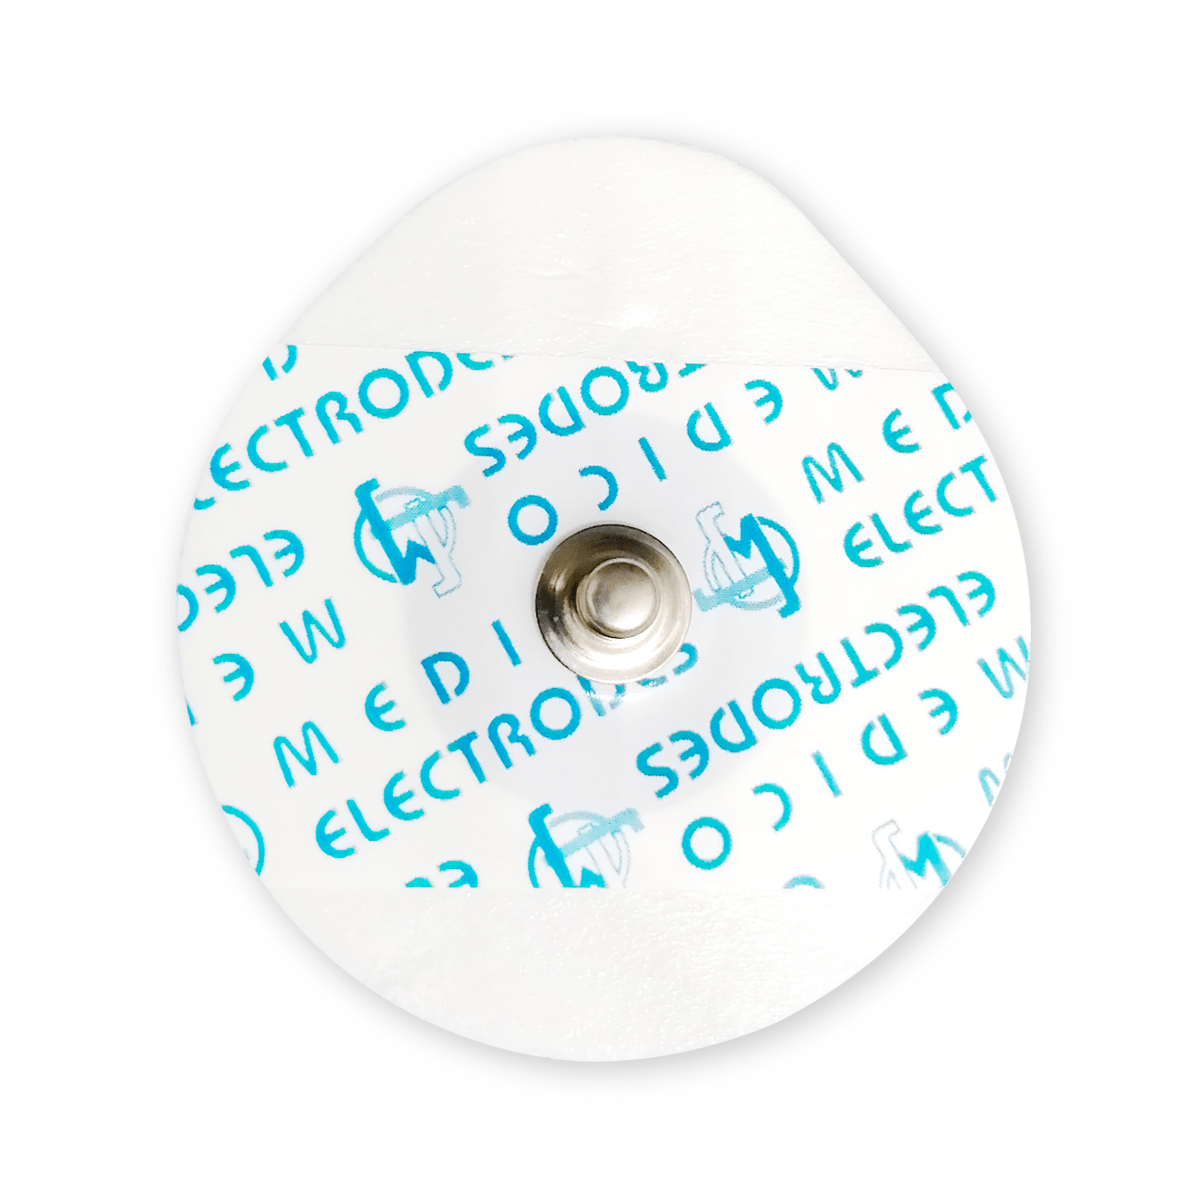 Electrodo para monitoreo, prueba de esfuerzo y Holter. Marca MEDICO ELECTRODES, Catálogo MSGLT08G. Sobre C/60 piezas.